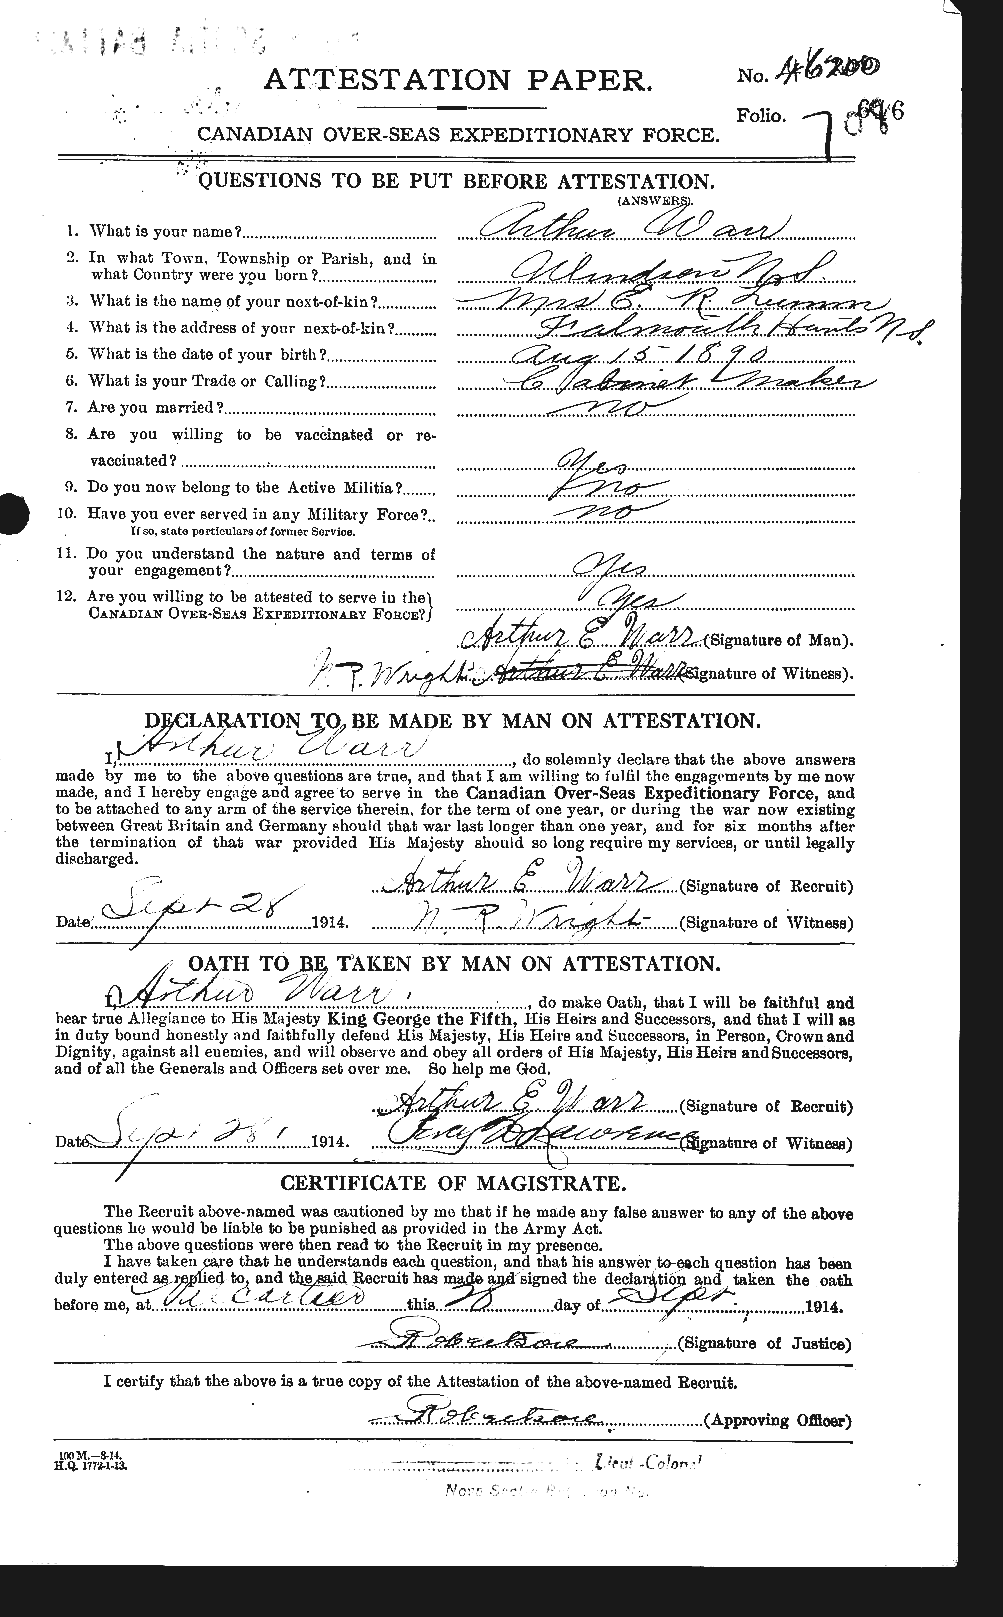 Dossiers du Personnel de la Première Guerre mondiale - CEC 657528a